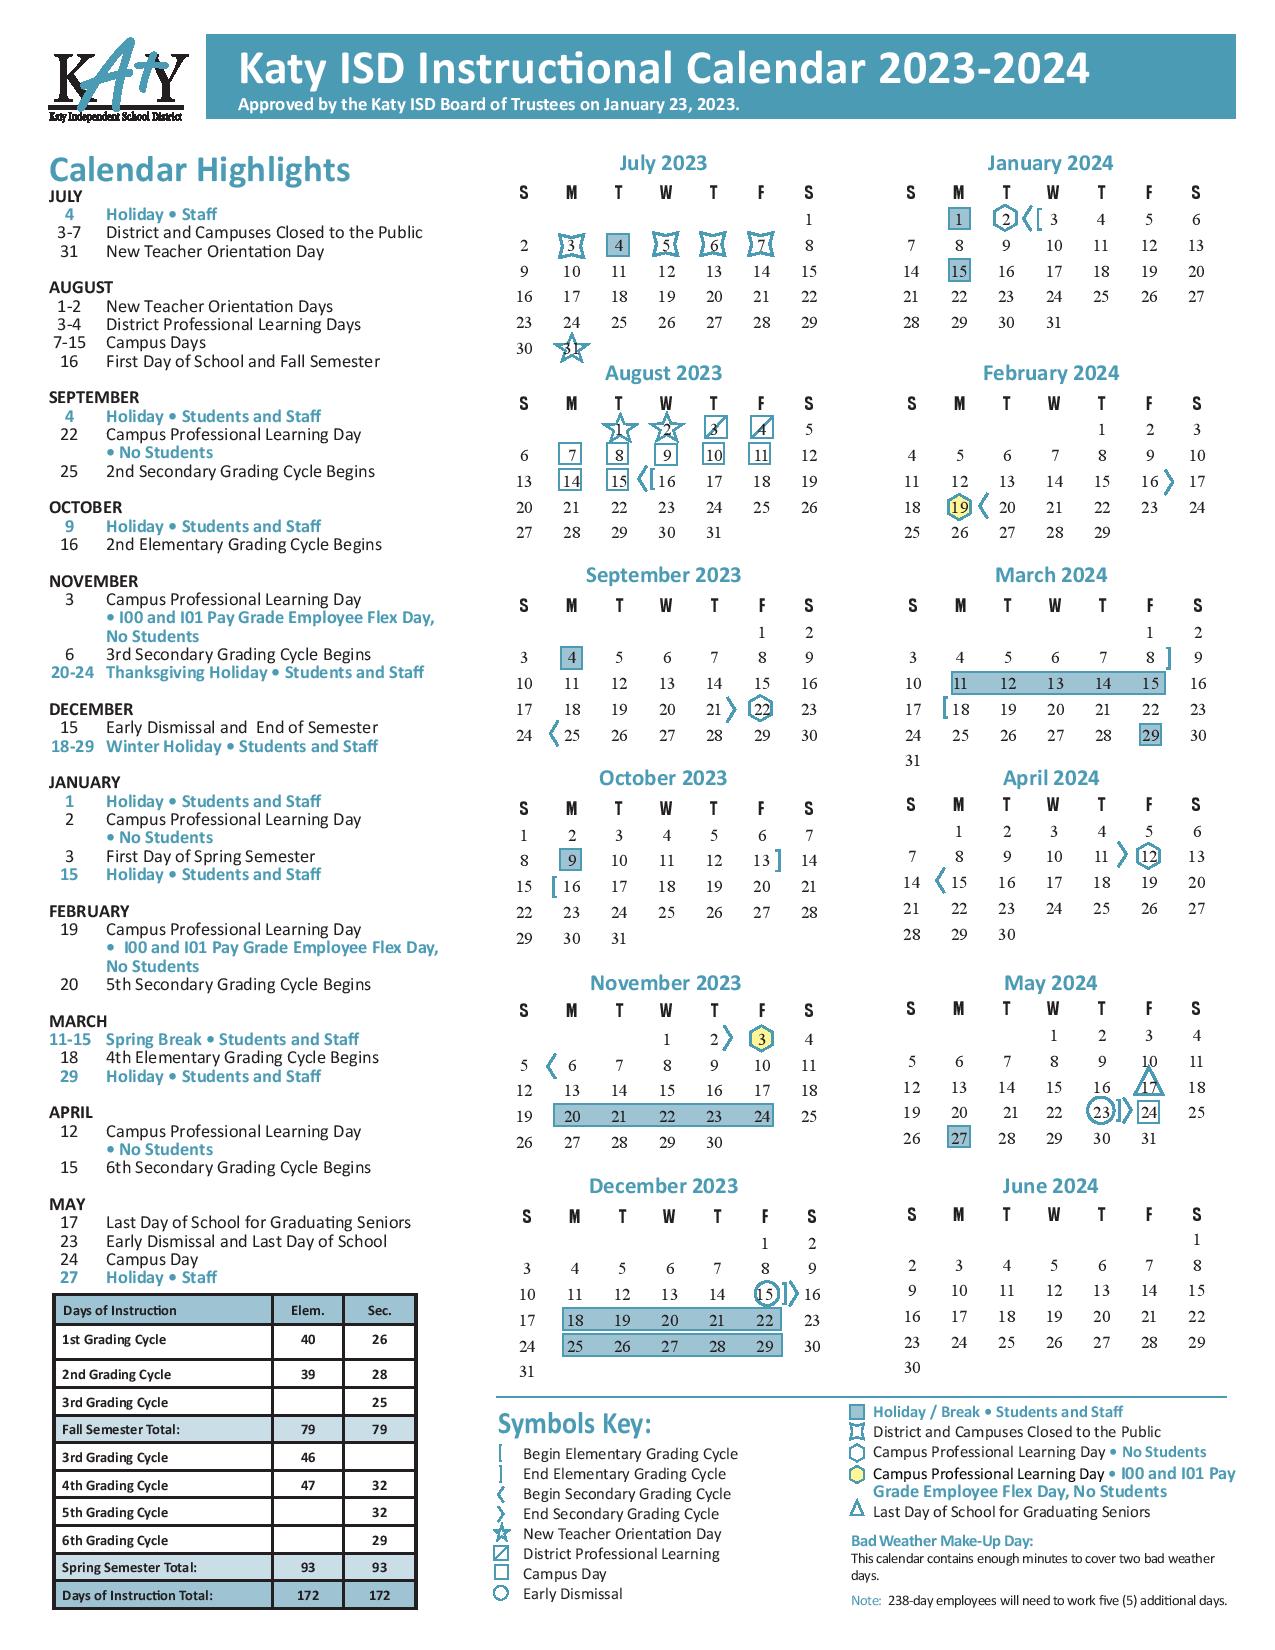 Prosper Isd School Calendar 202424 Britt Colleen